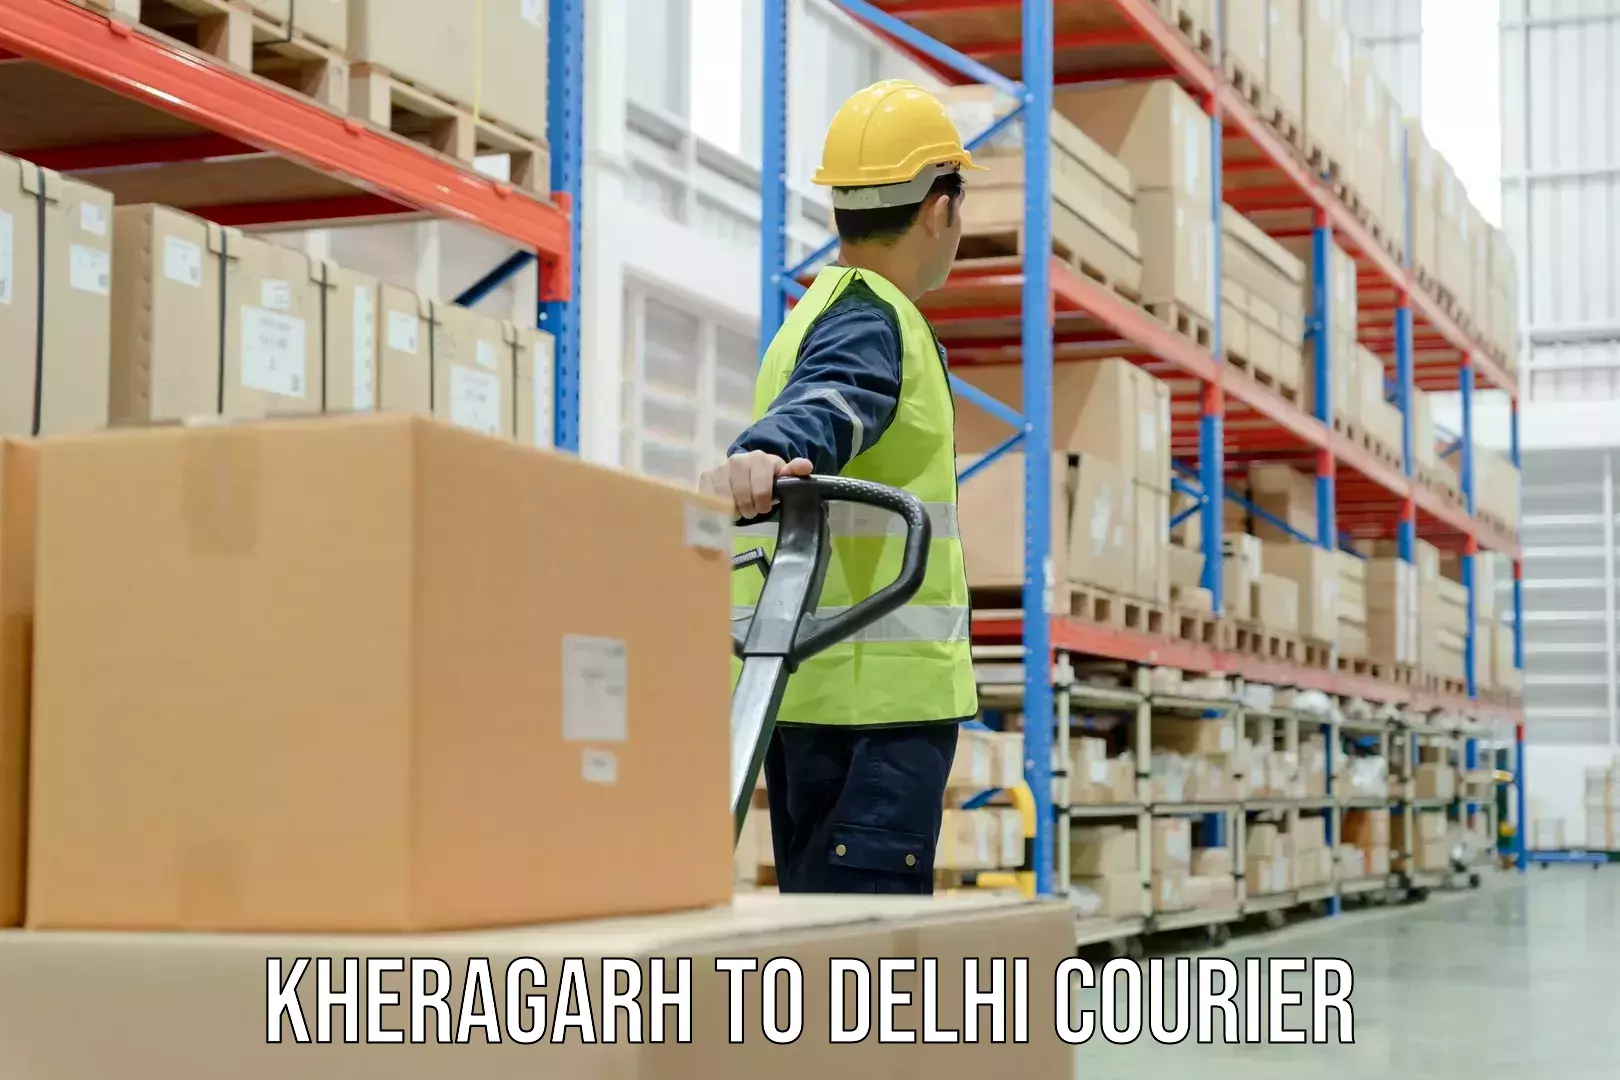 Easy access courier services Kheragarh to Ramesh Nagar